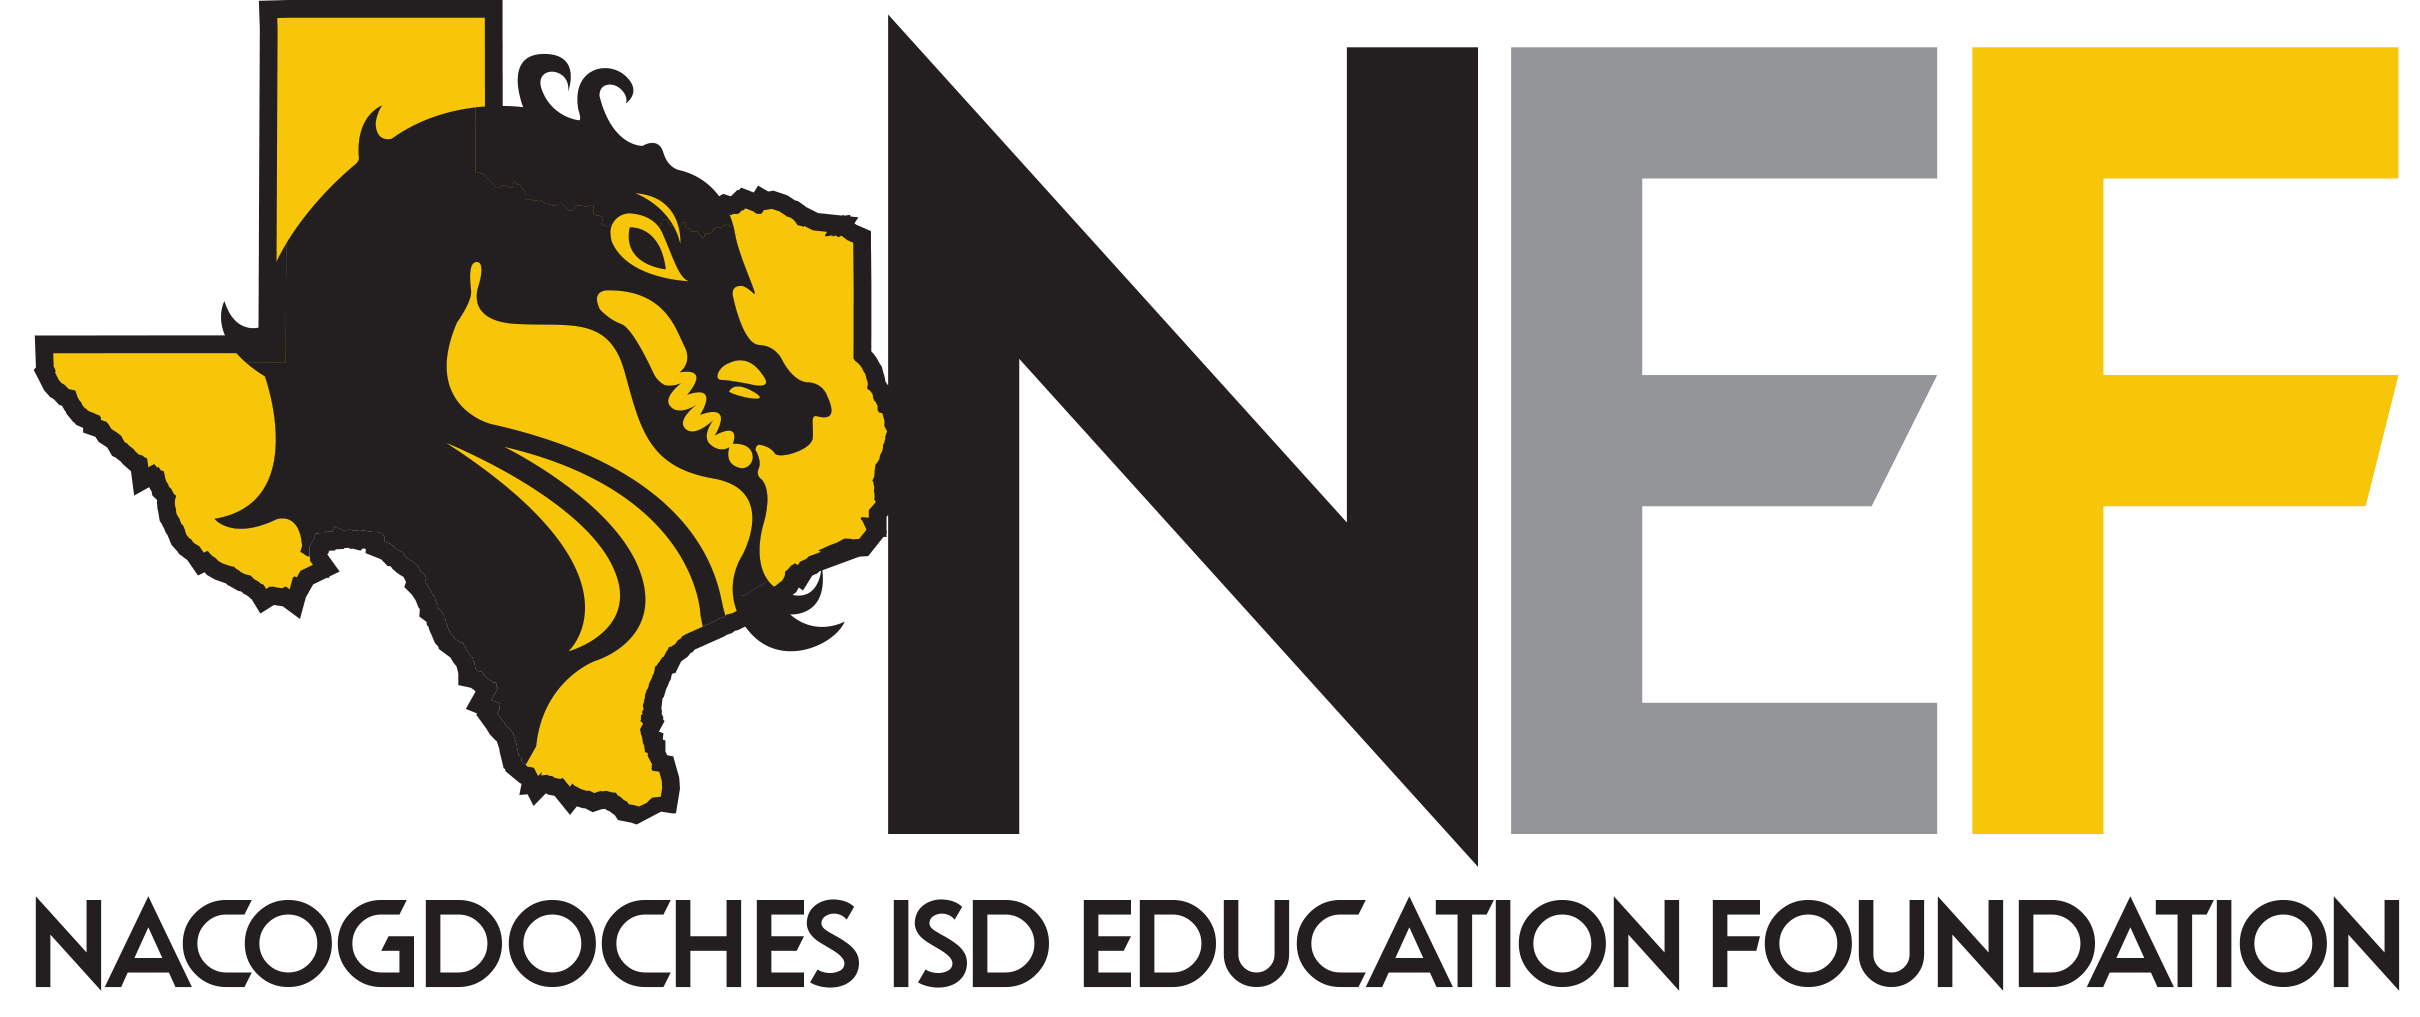 Nacogdoches ISD Education Foundation logo